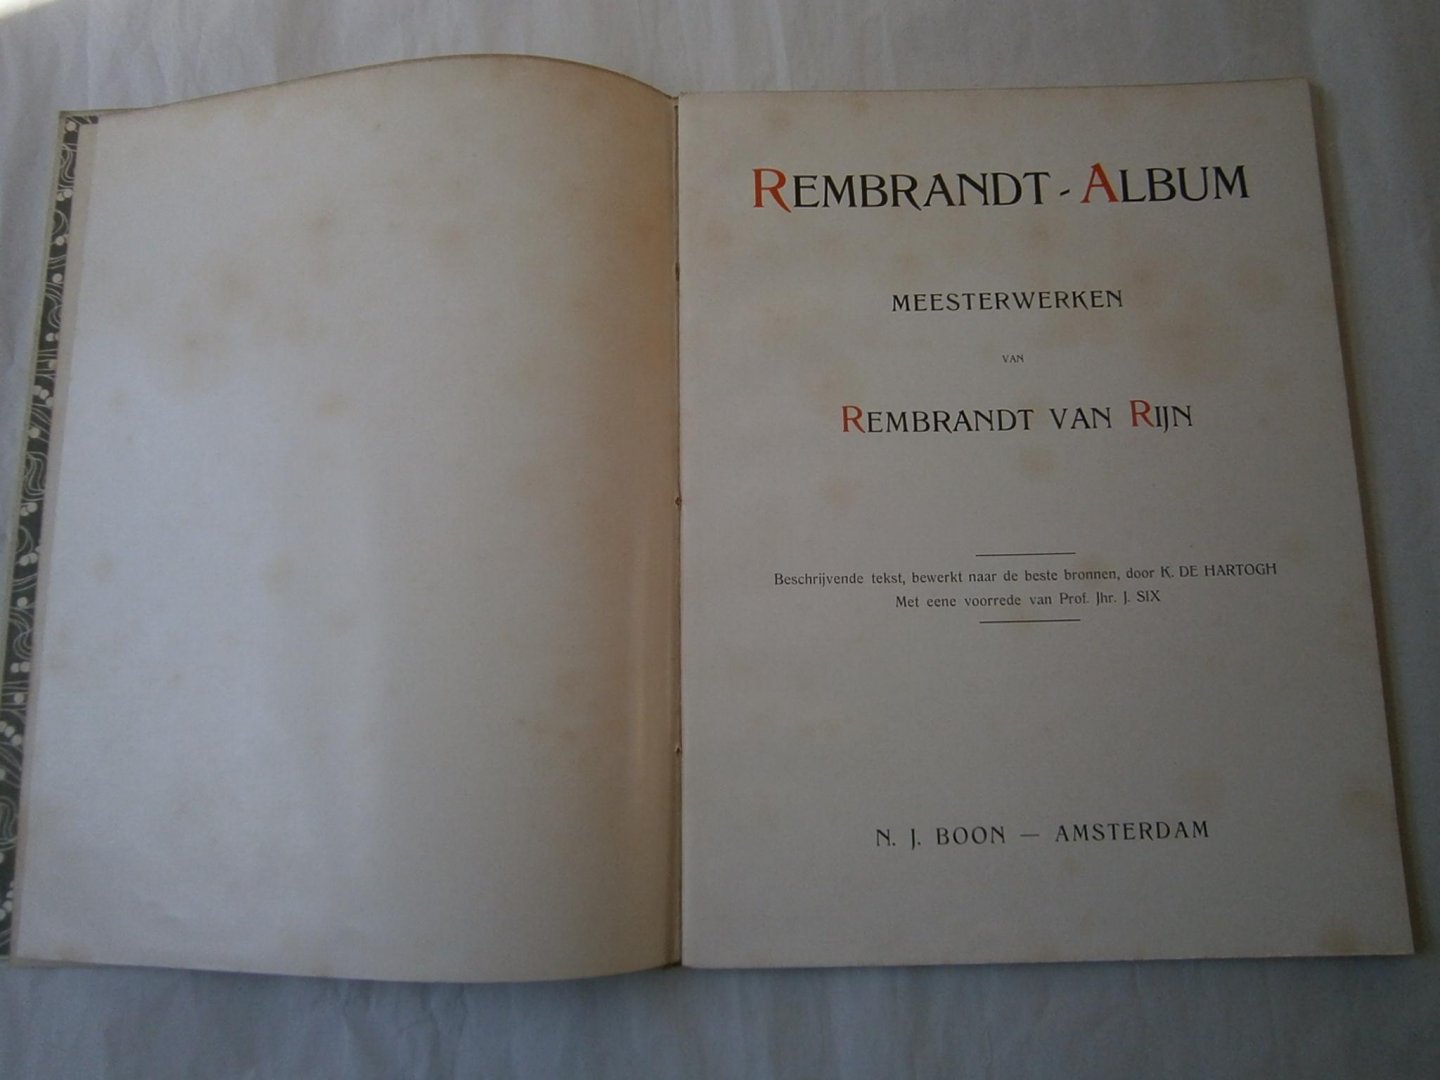 Hartogh, K. de - Rembrandt album meesterwerken van Rembrandt van Rijn